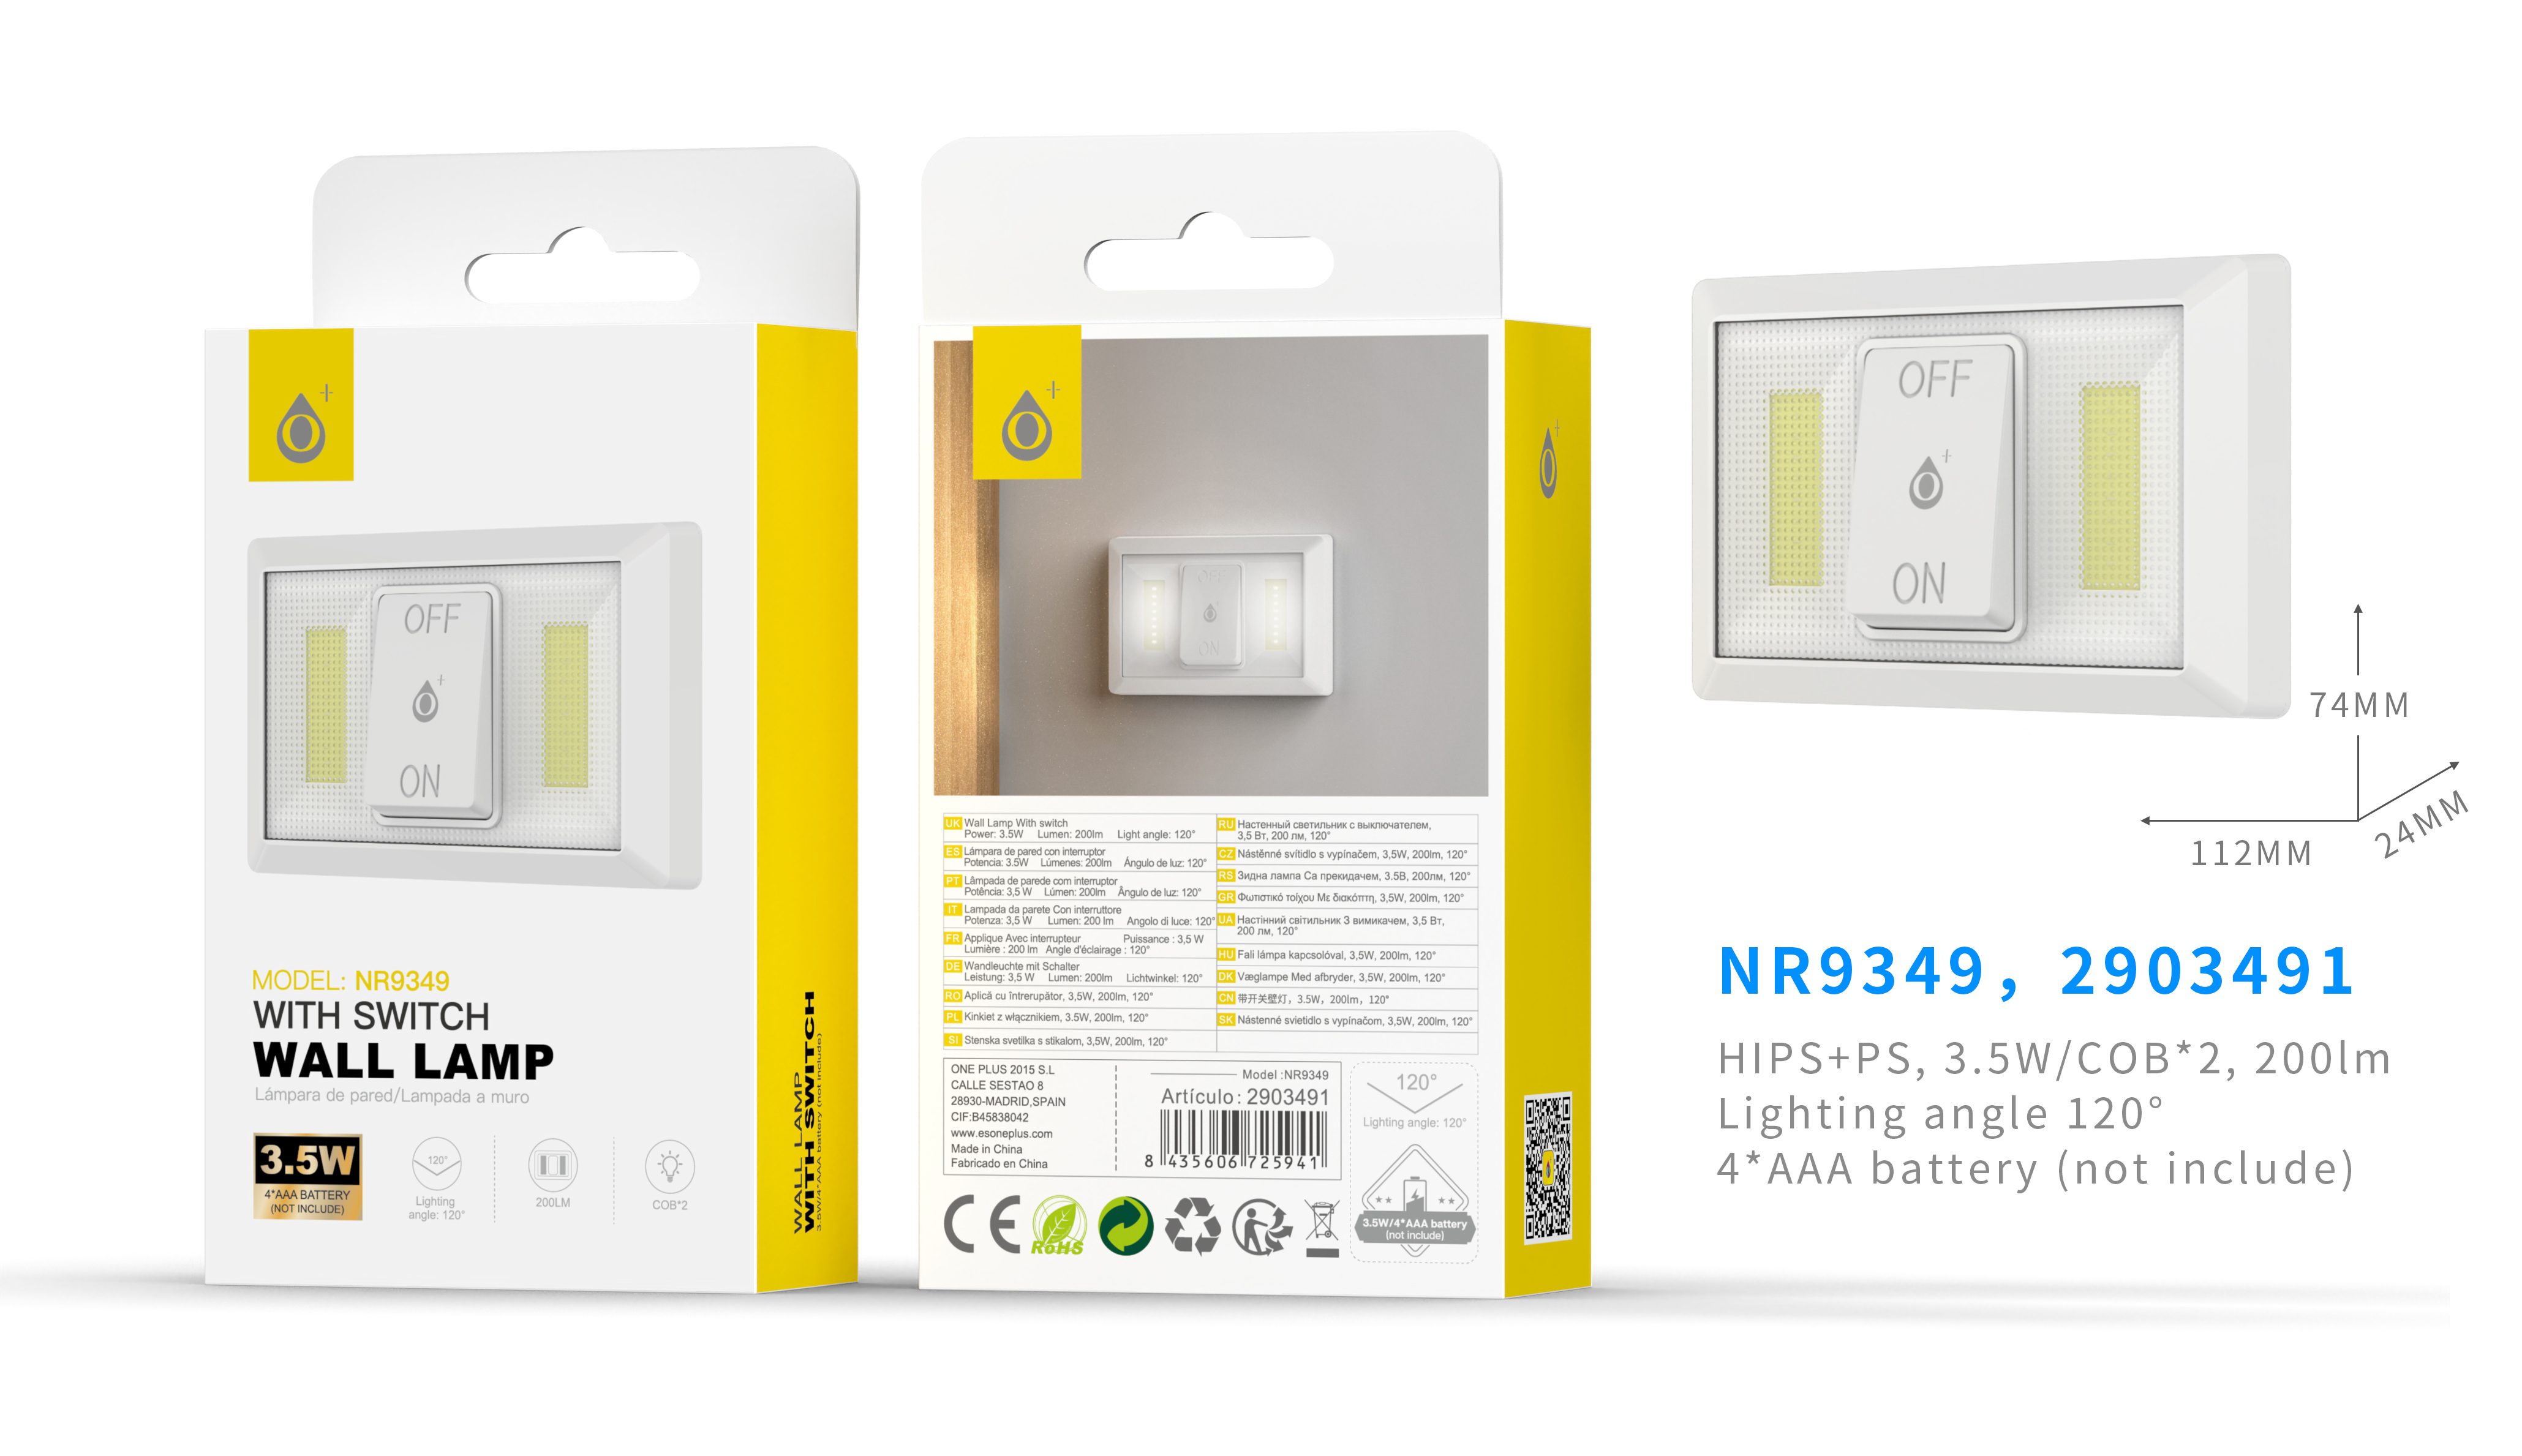 NR9349 BL Lampara de Pared LED 3.5W 200LM con interruptor ON/OFF  y angulo de luz 120°, Bateria 4*AAA(NO incluye), Blanco